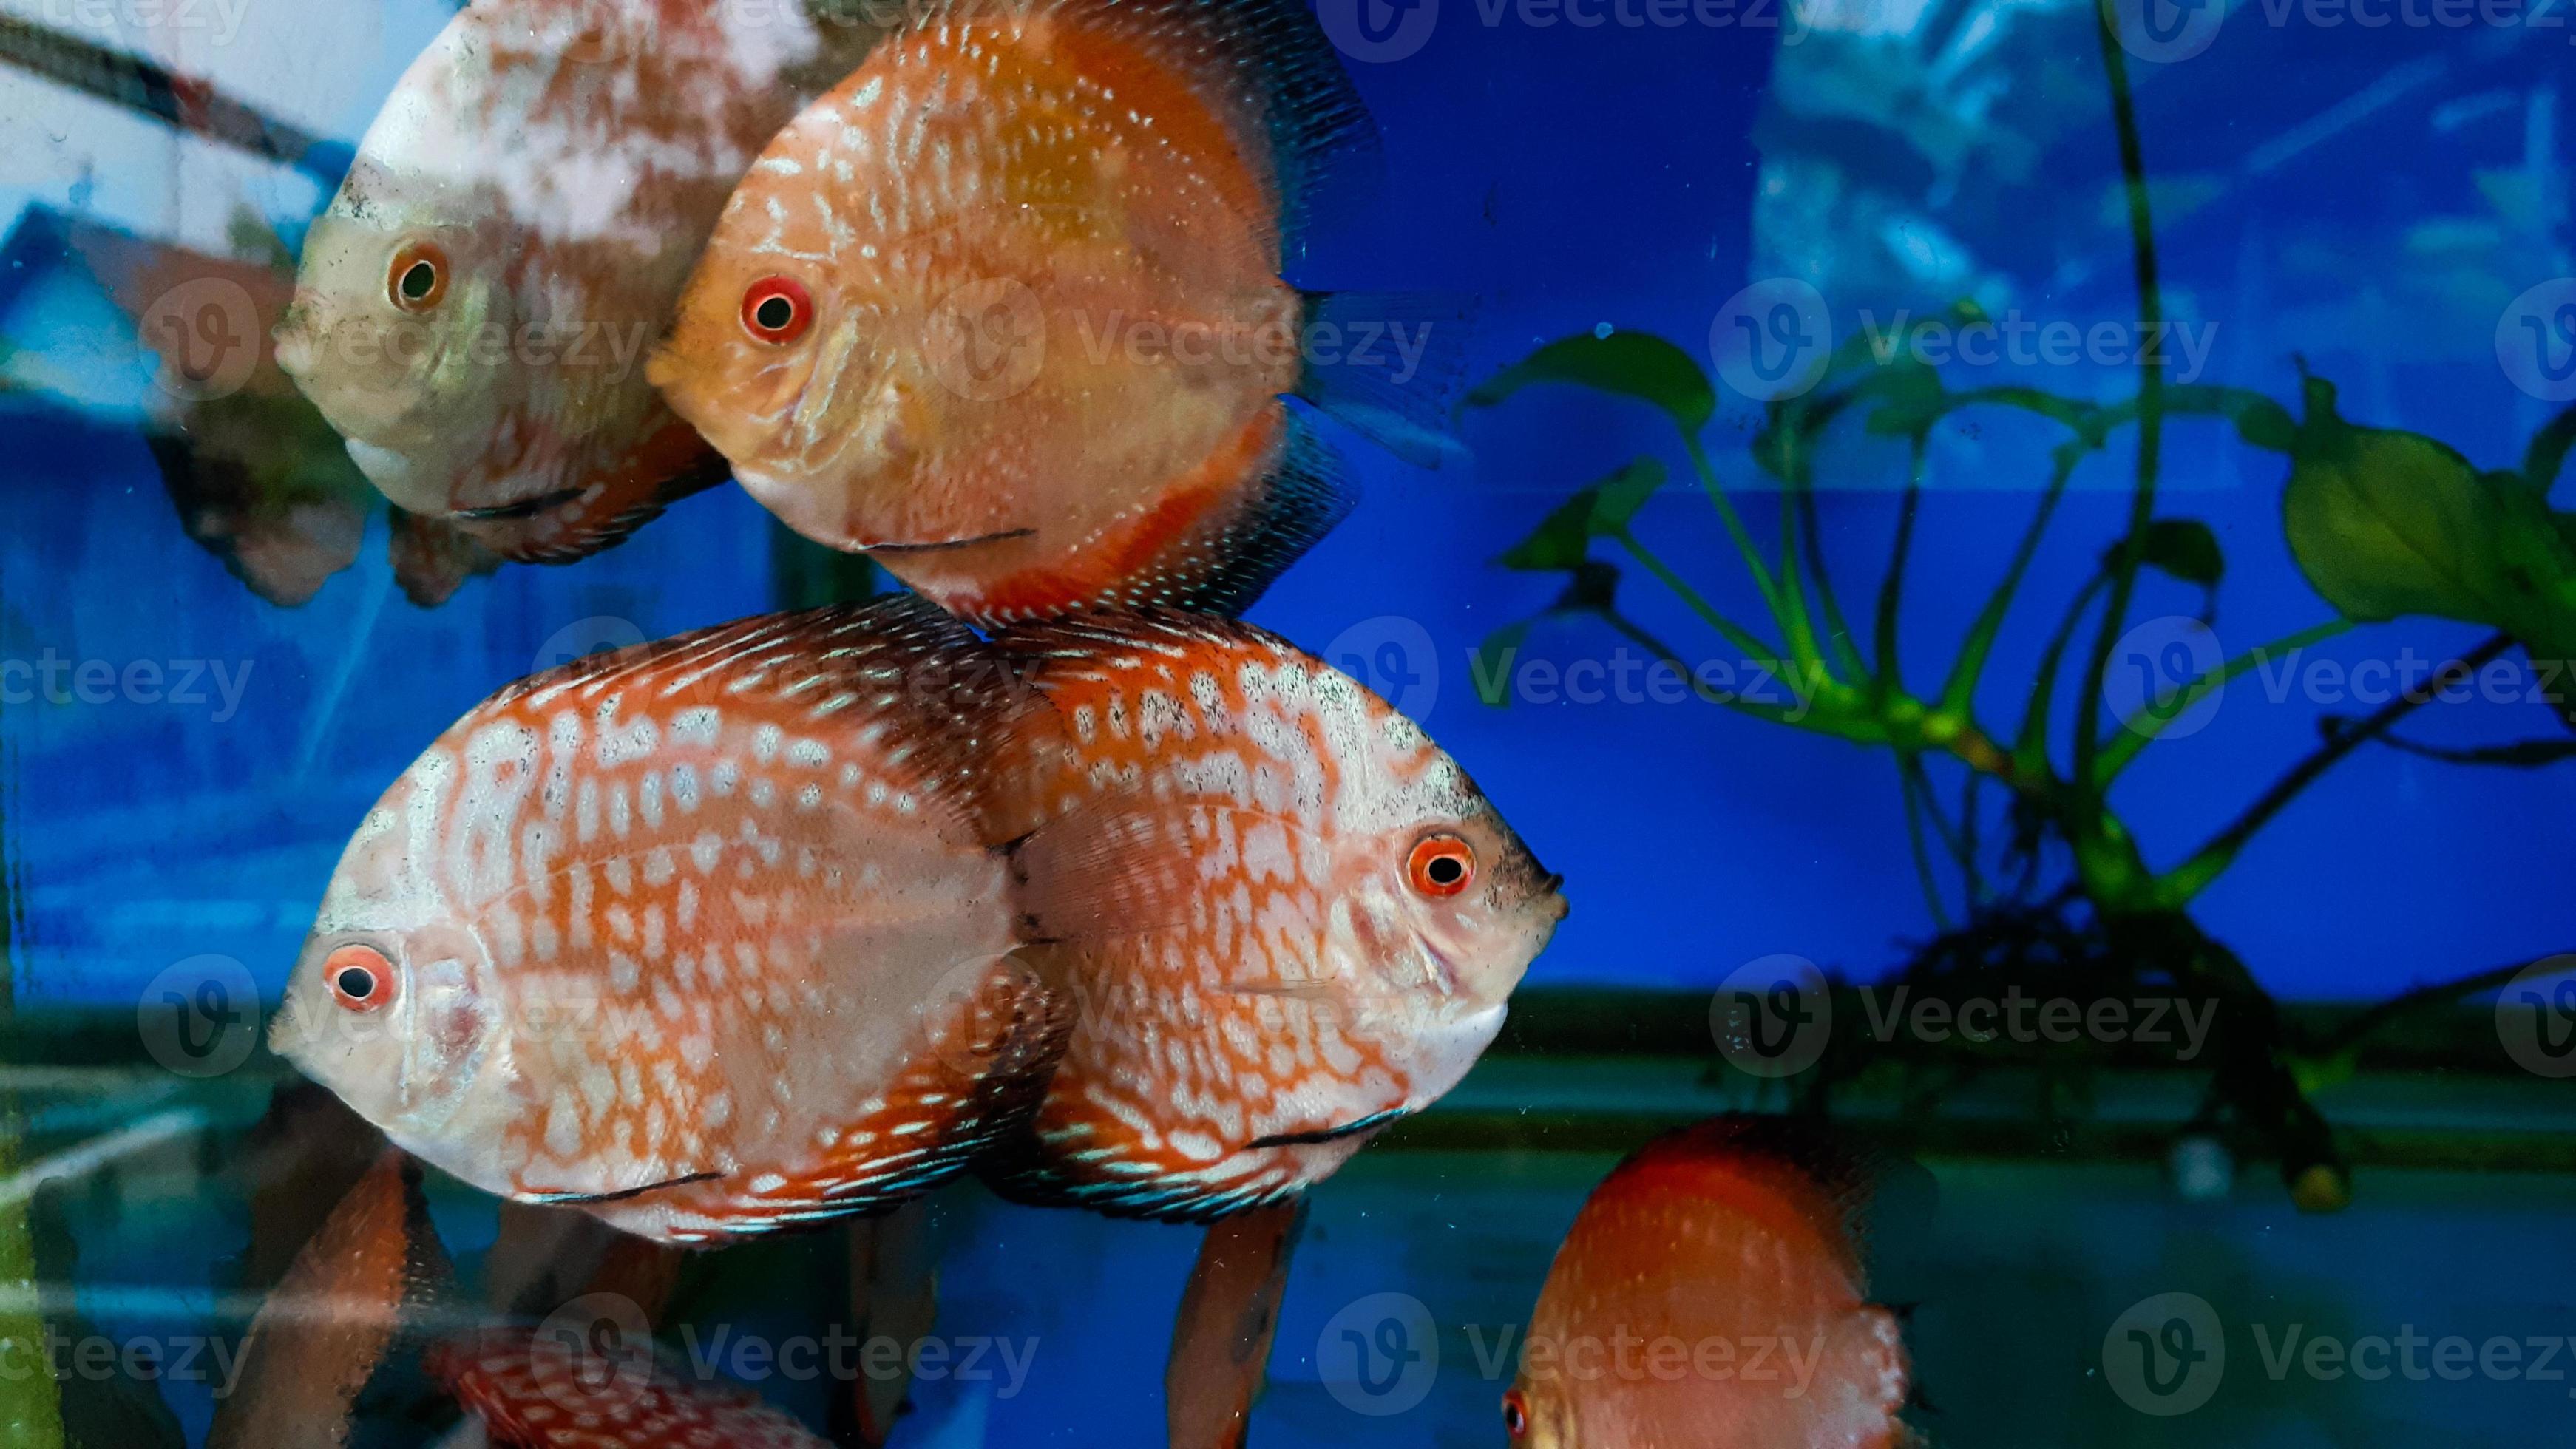 Herenhuis innovatie Teken een foto discus vis in aquarium, tropisch vis. symphysodon discus van amazon rivier.  blauw diamant, slangenleer, rood turkoois en meer 15468388 Stockfoto